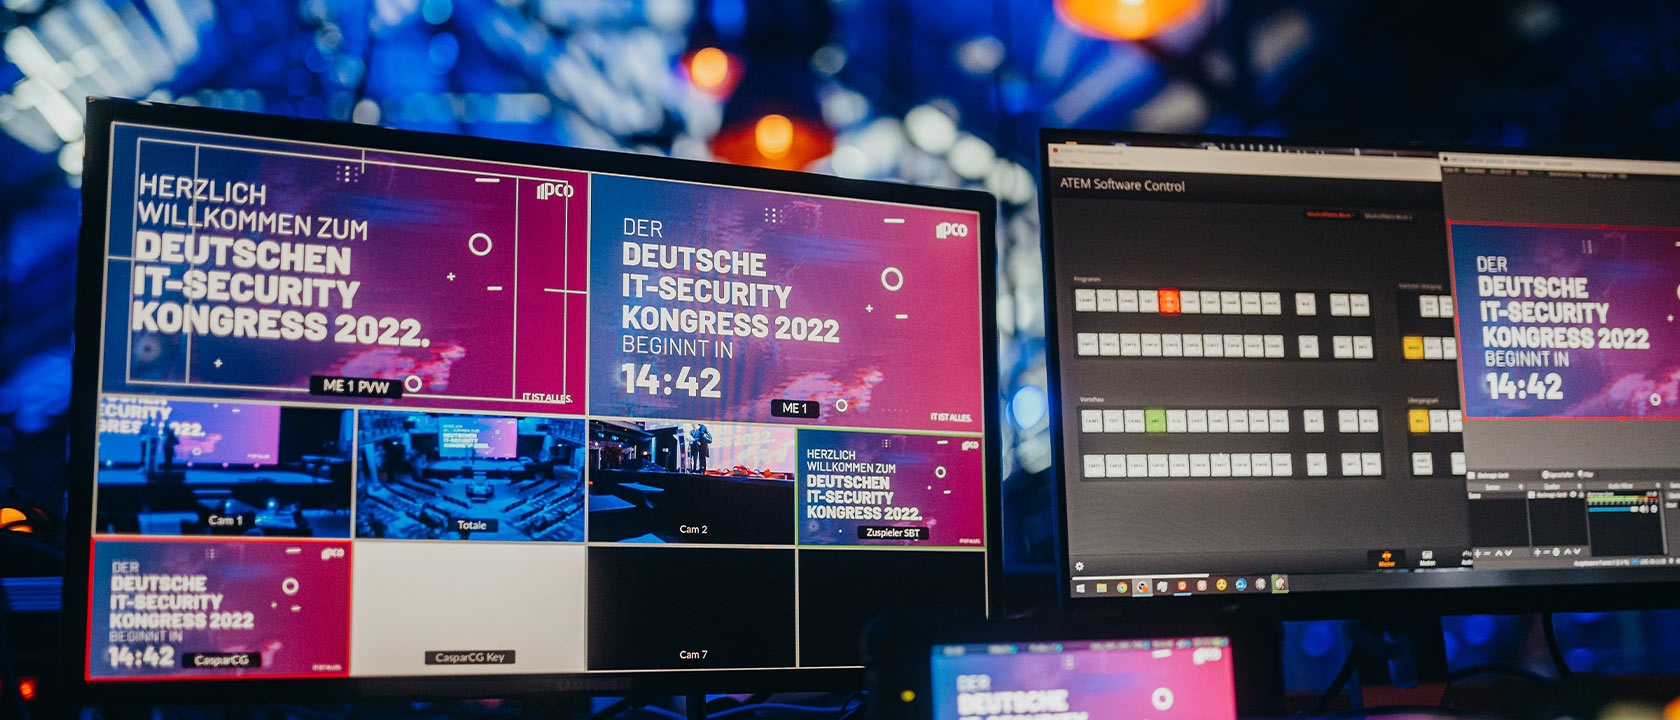 Countdown für den Deutschen IT-Security Kongress 2022